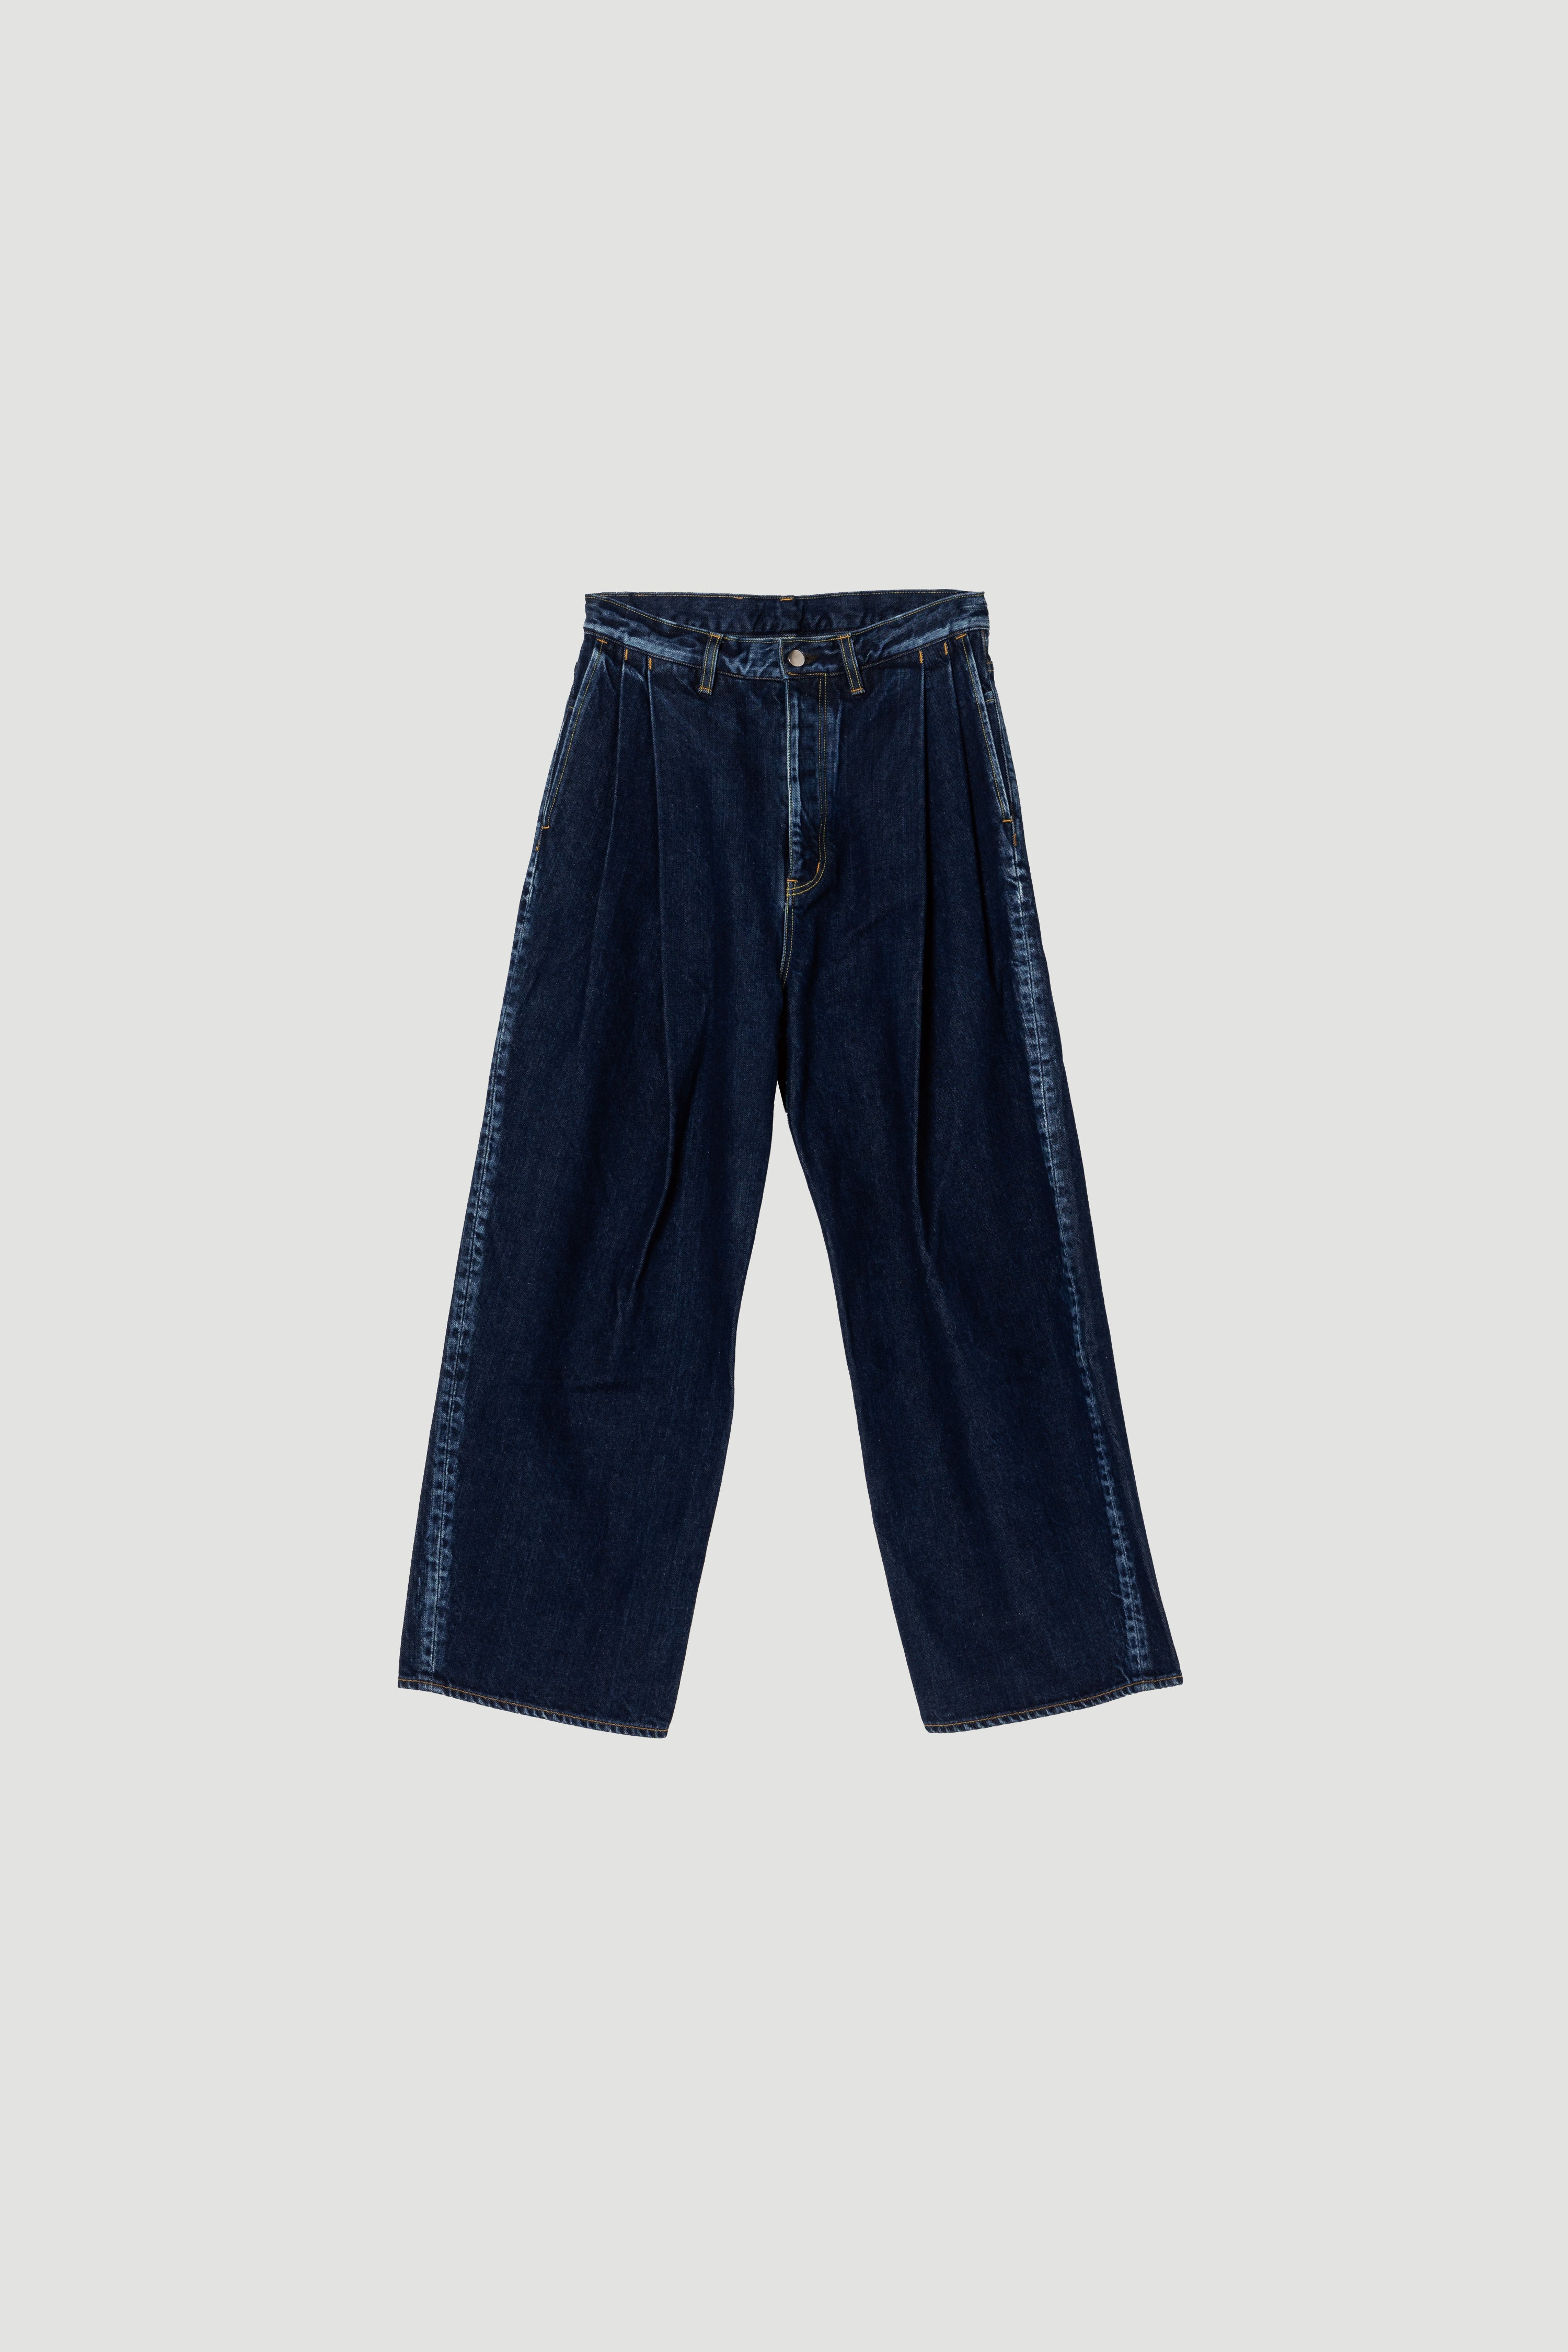 【美品】sublations 2tuck wide denim pants裾幅約25cm